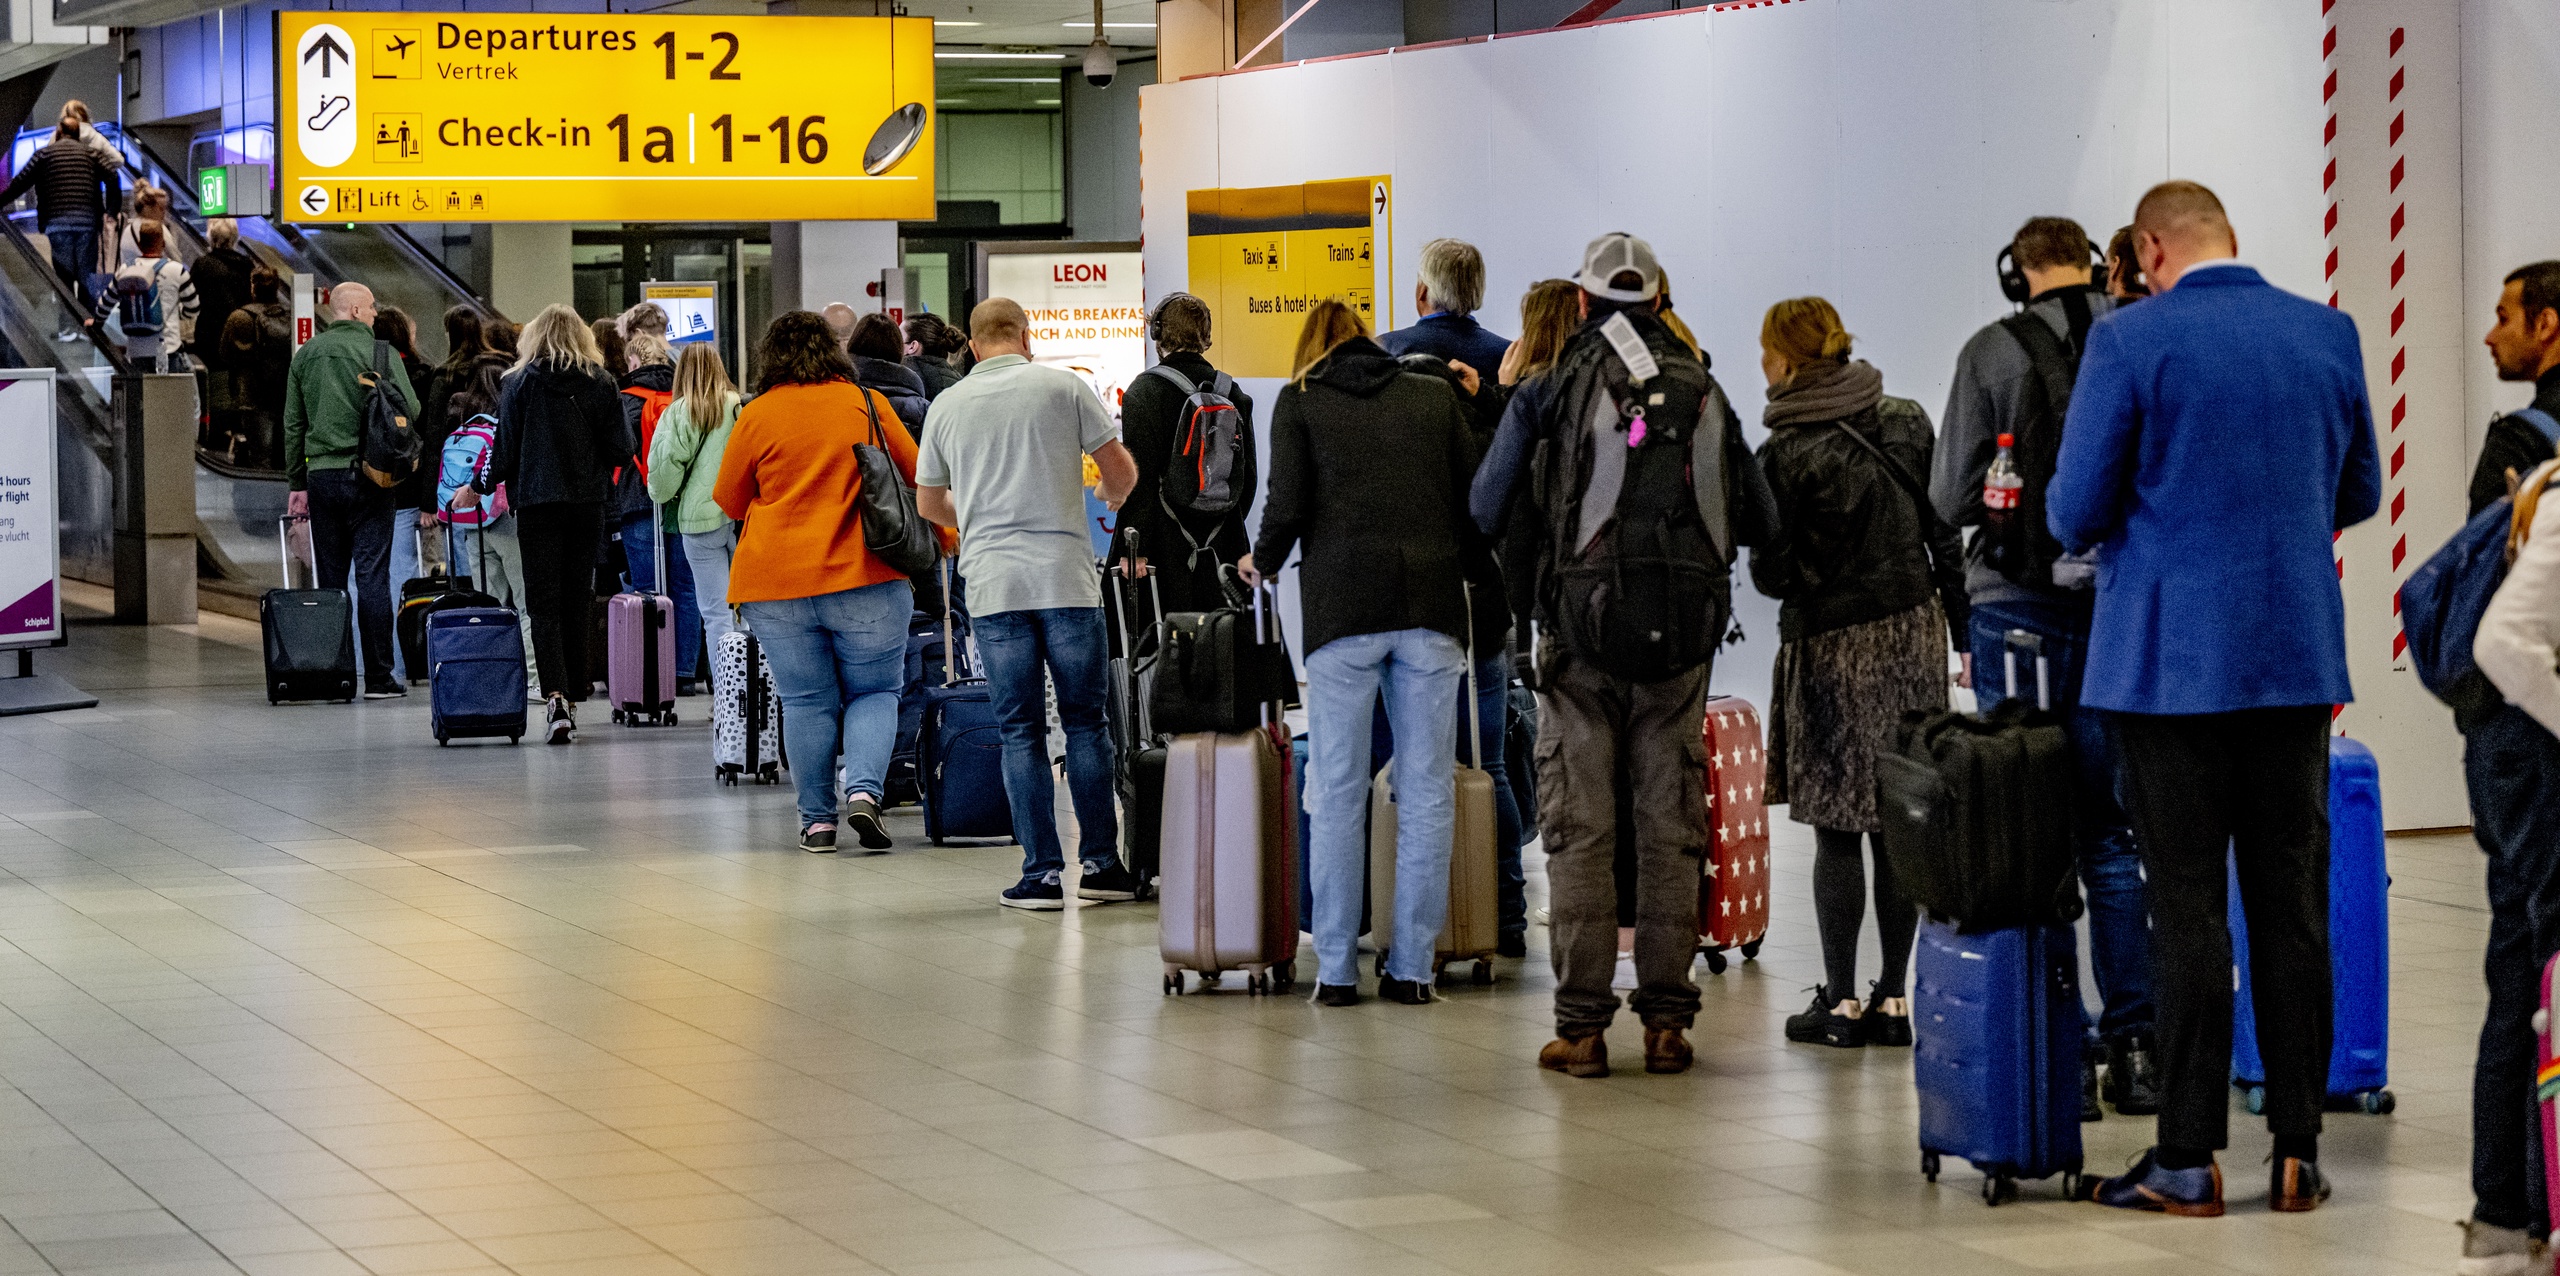 Schiphol wil voor april 2023 achthonderd extra beveiligers hebben geworven voor werk op de luchthaven. Die zijn nodig om het vliegveld te laten functioneren zoals voorheen. 